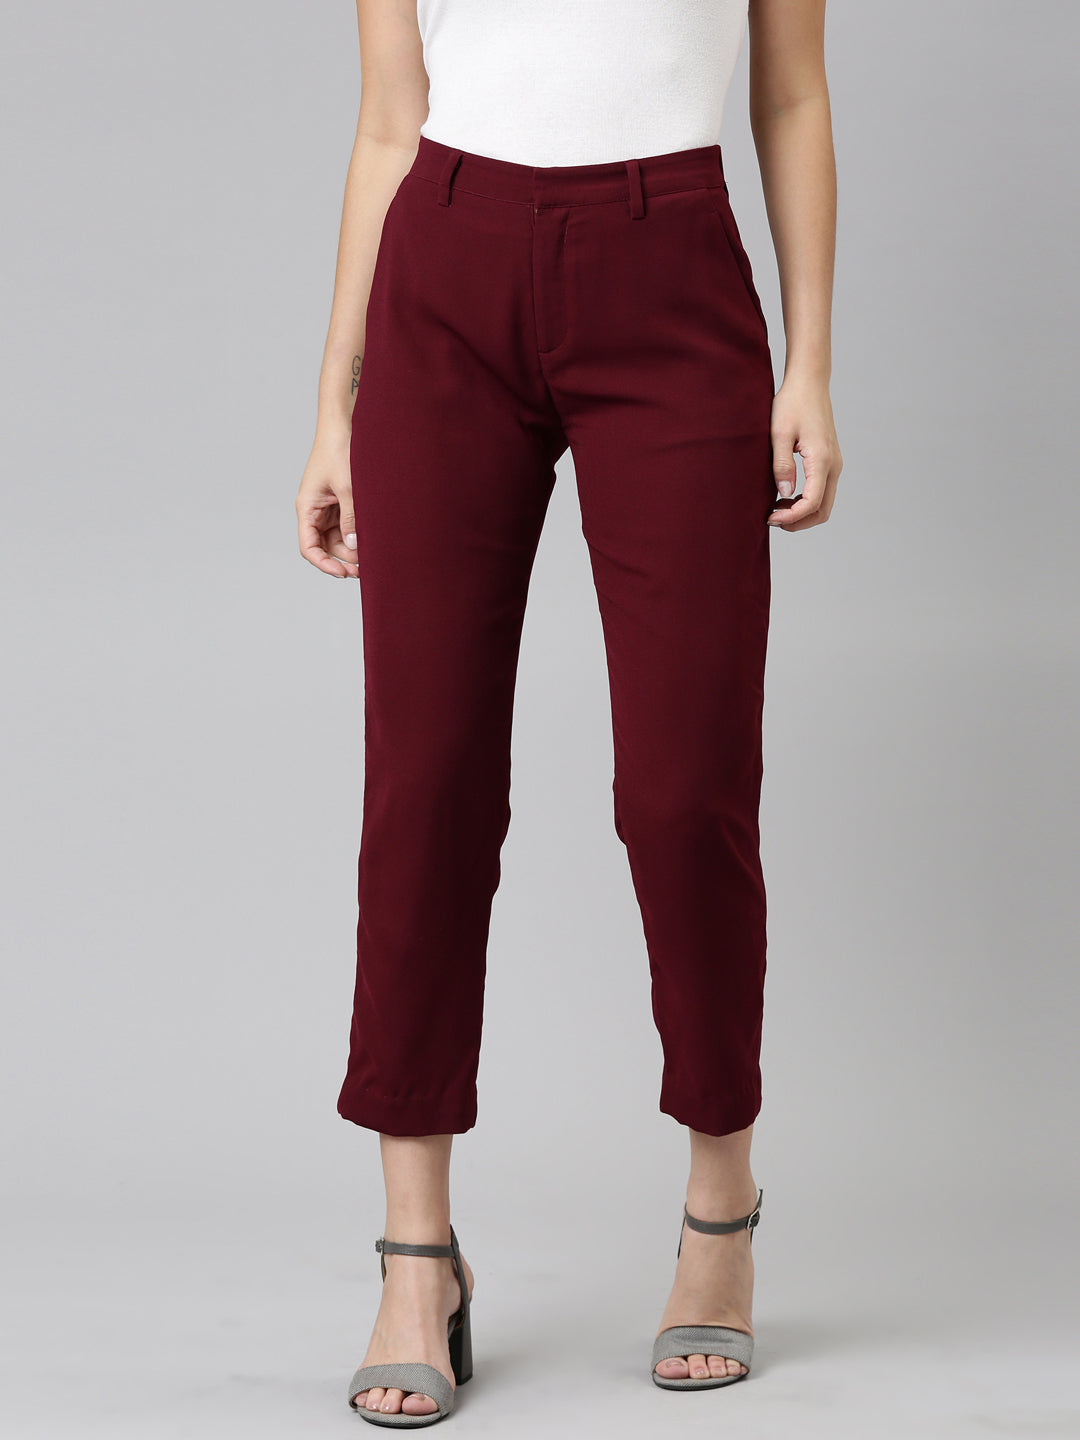 burgundy pants for women | Nordstrom